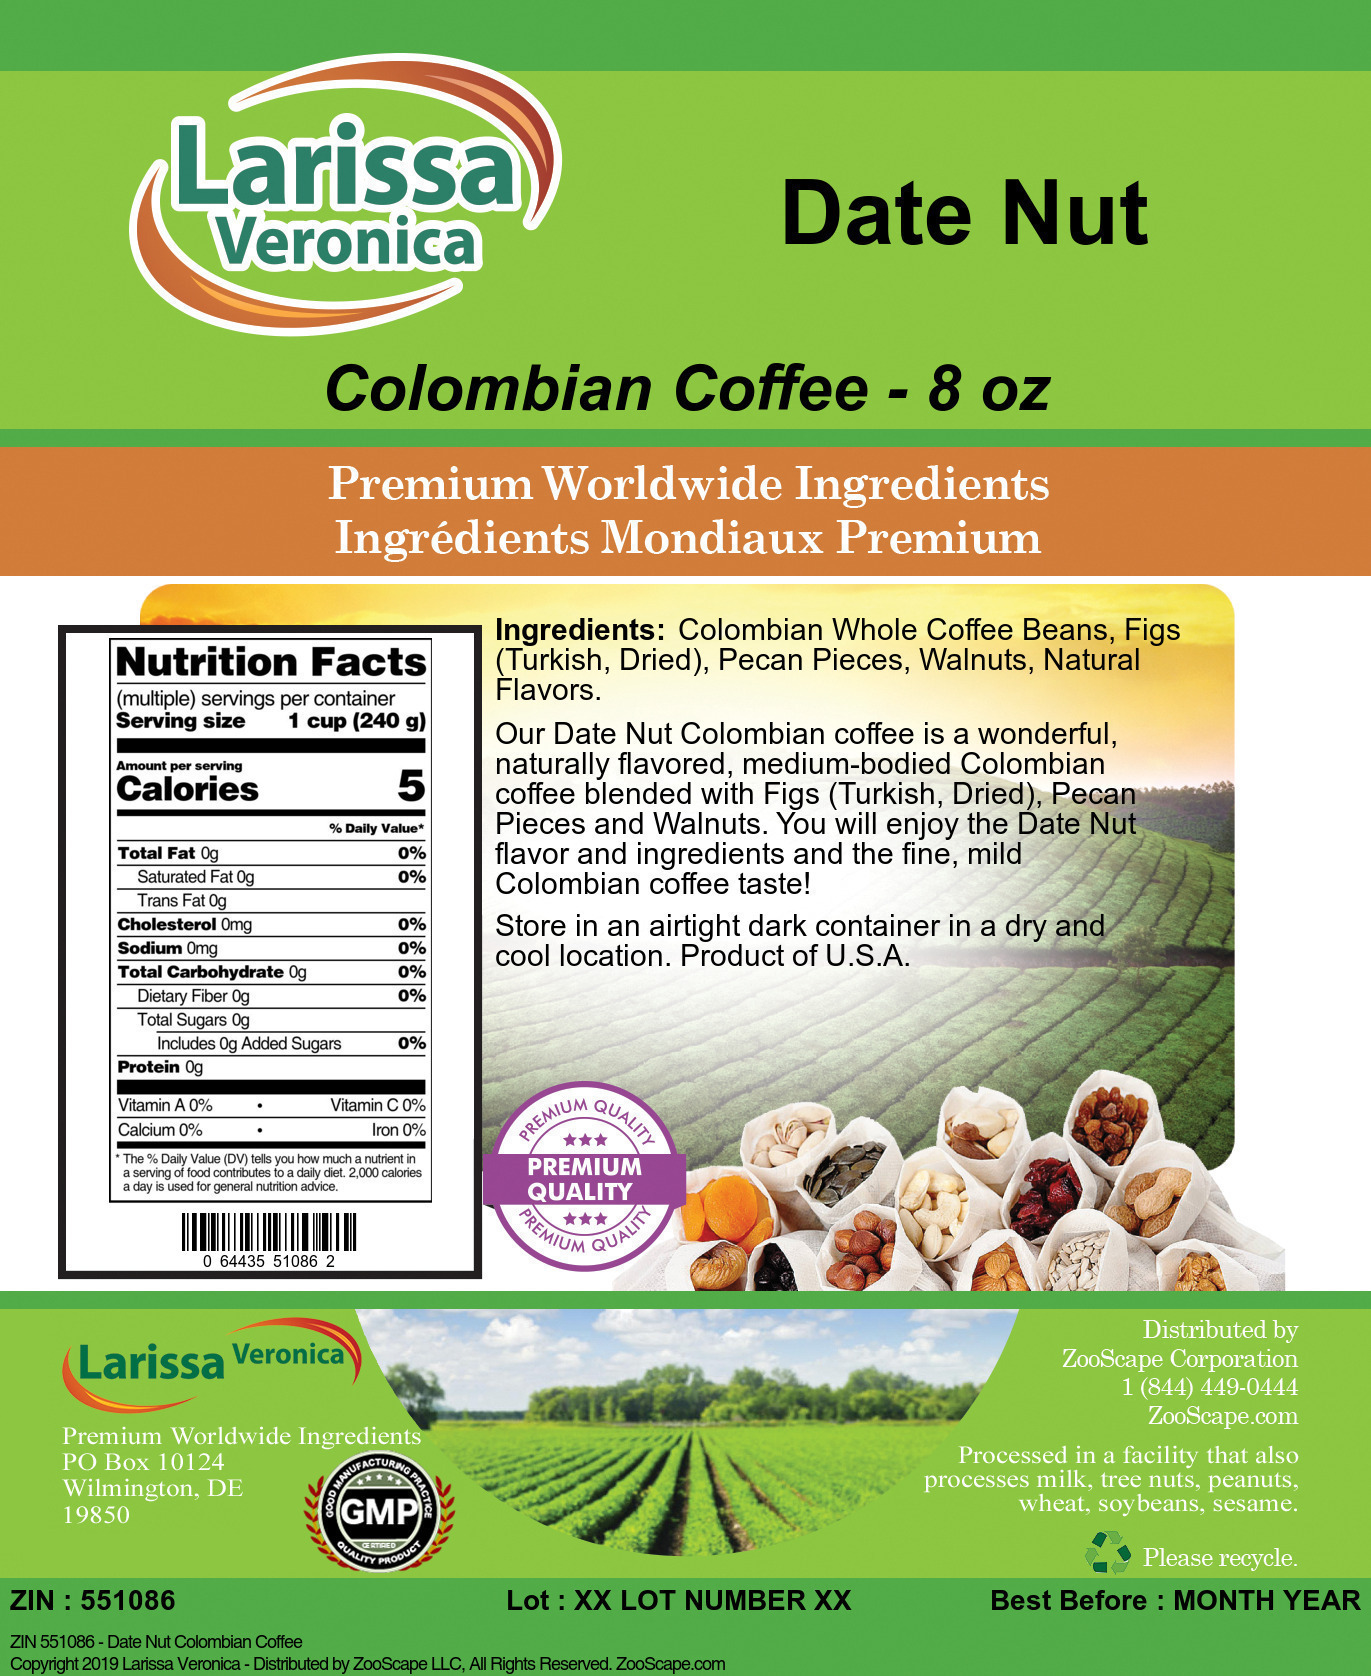 Date Nut Colombian Coffee - Label